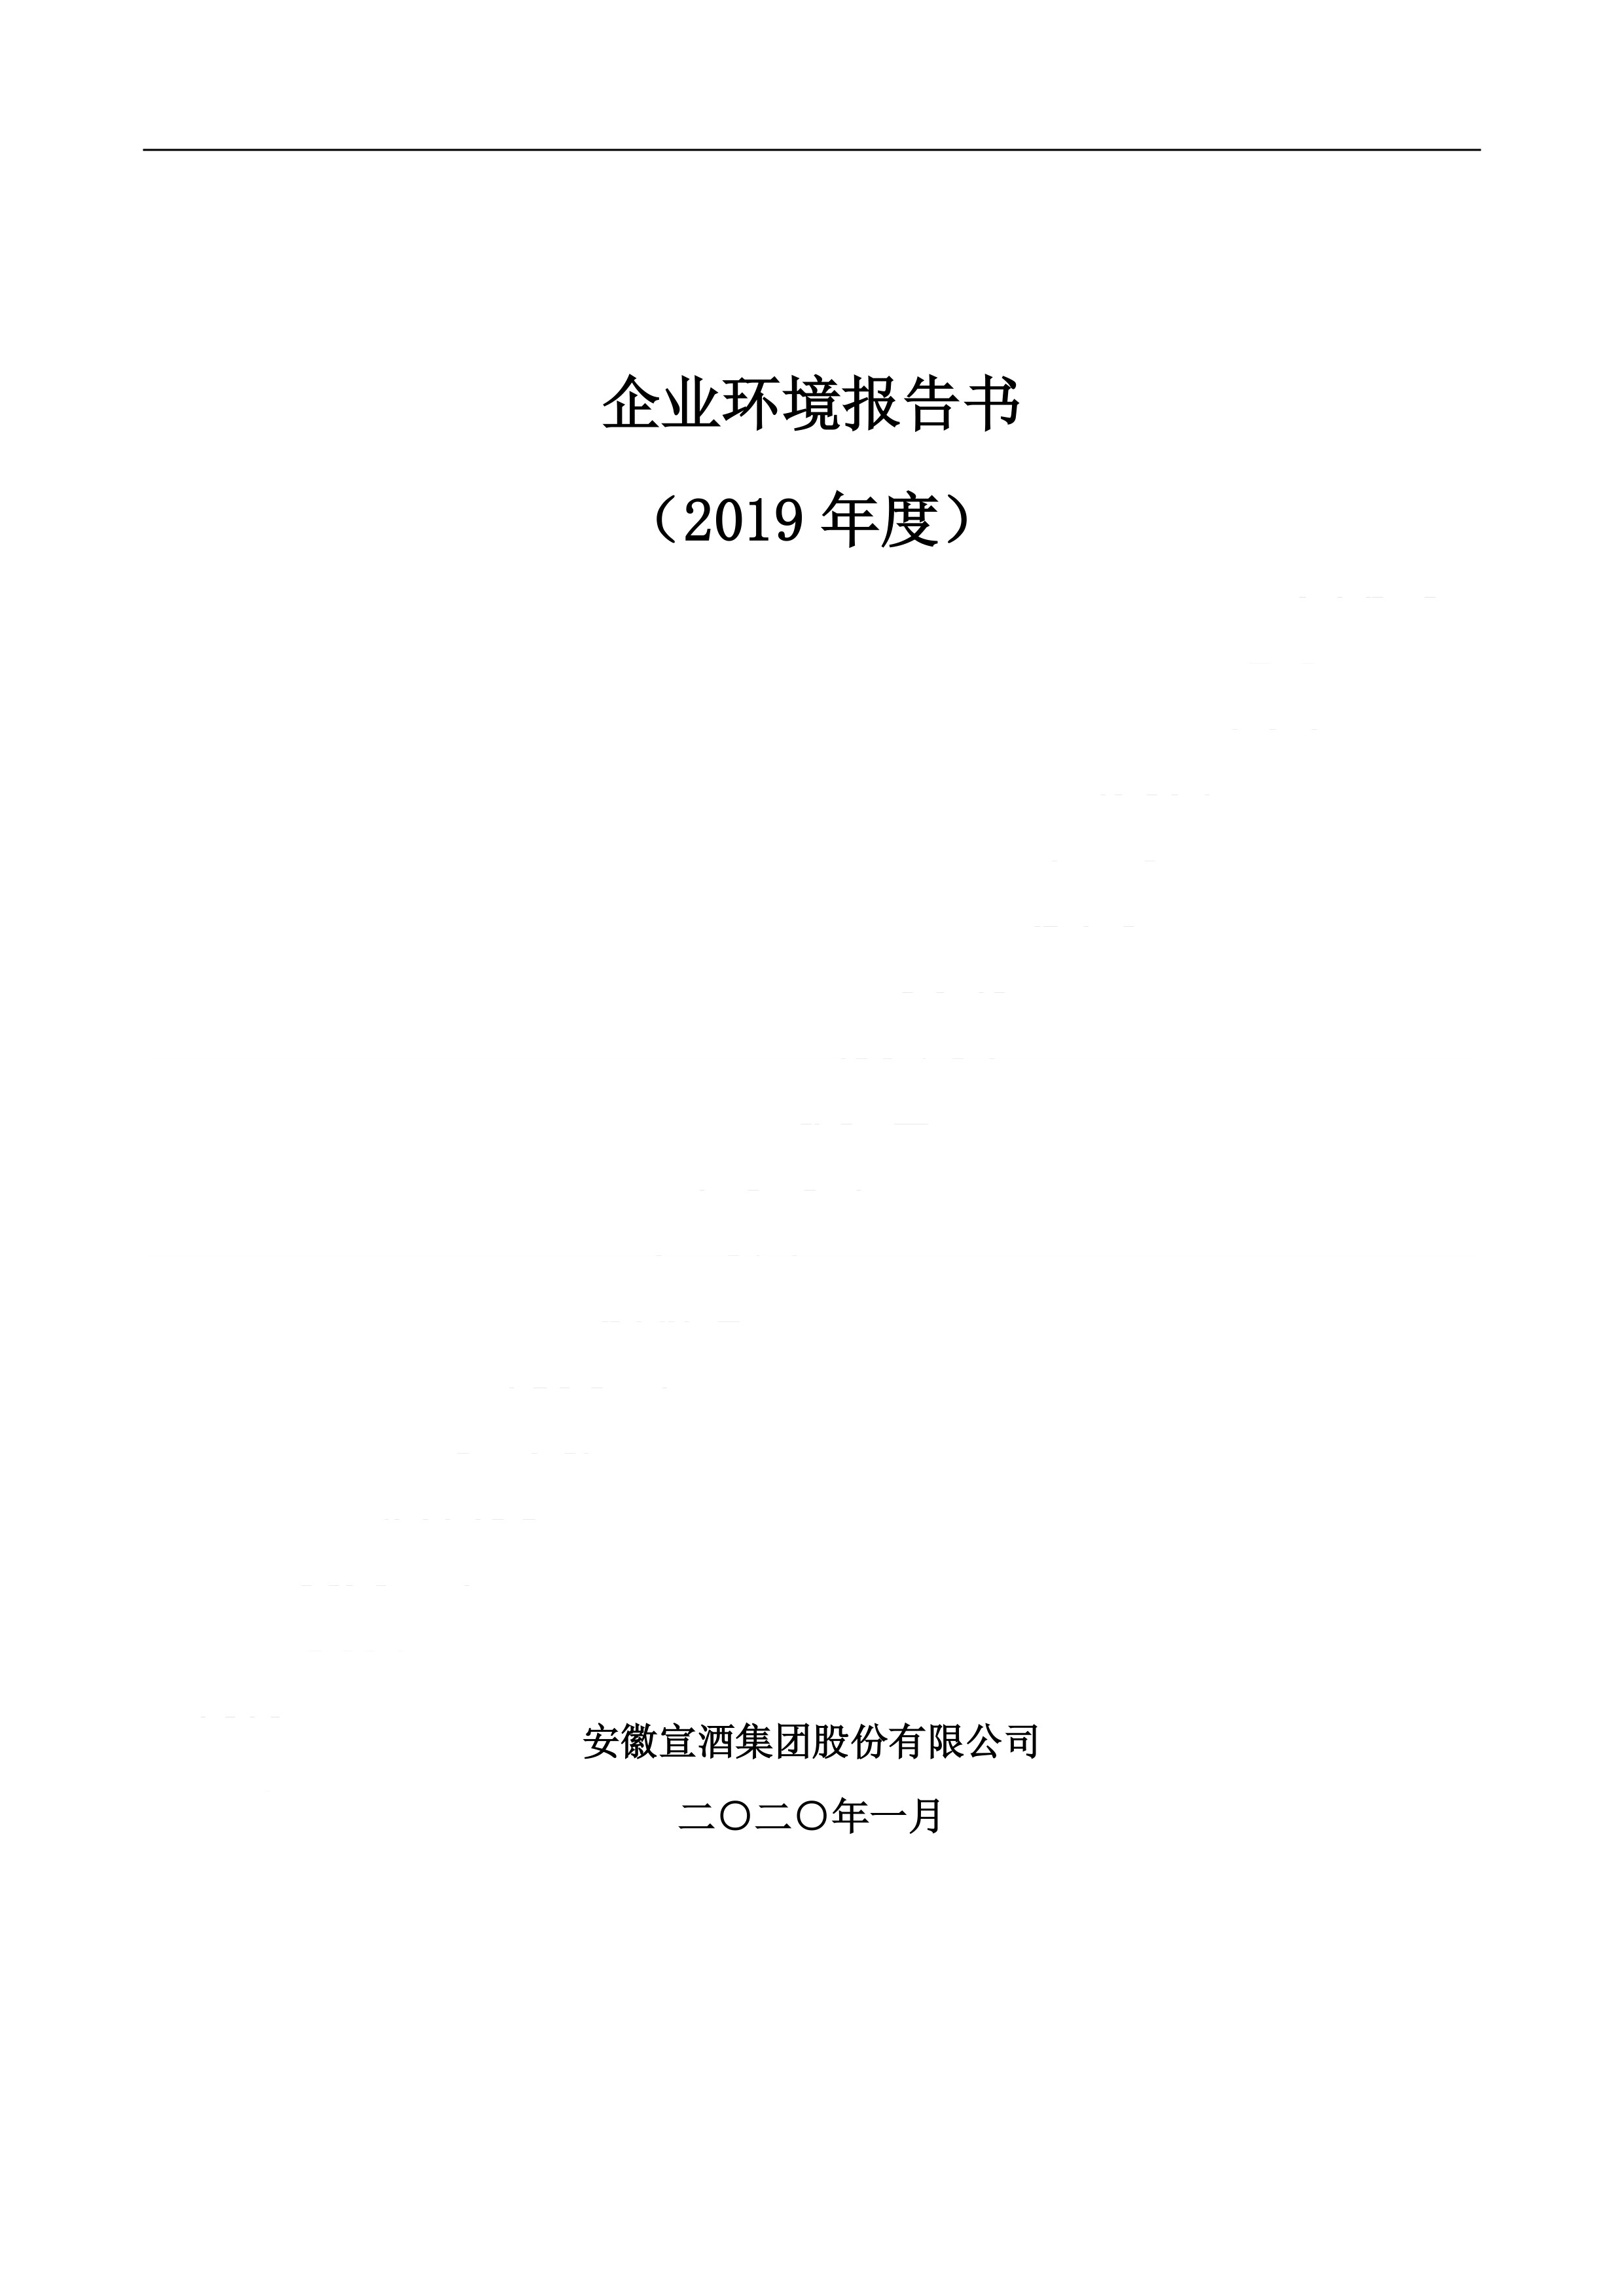 2019宣酒集团环境报告书.pdf_1.jpg